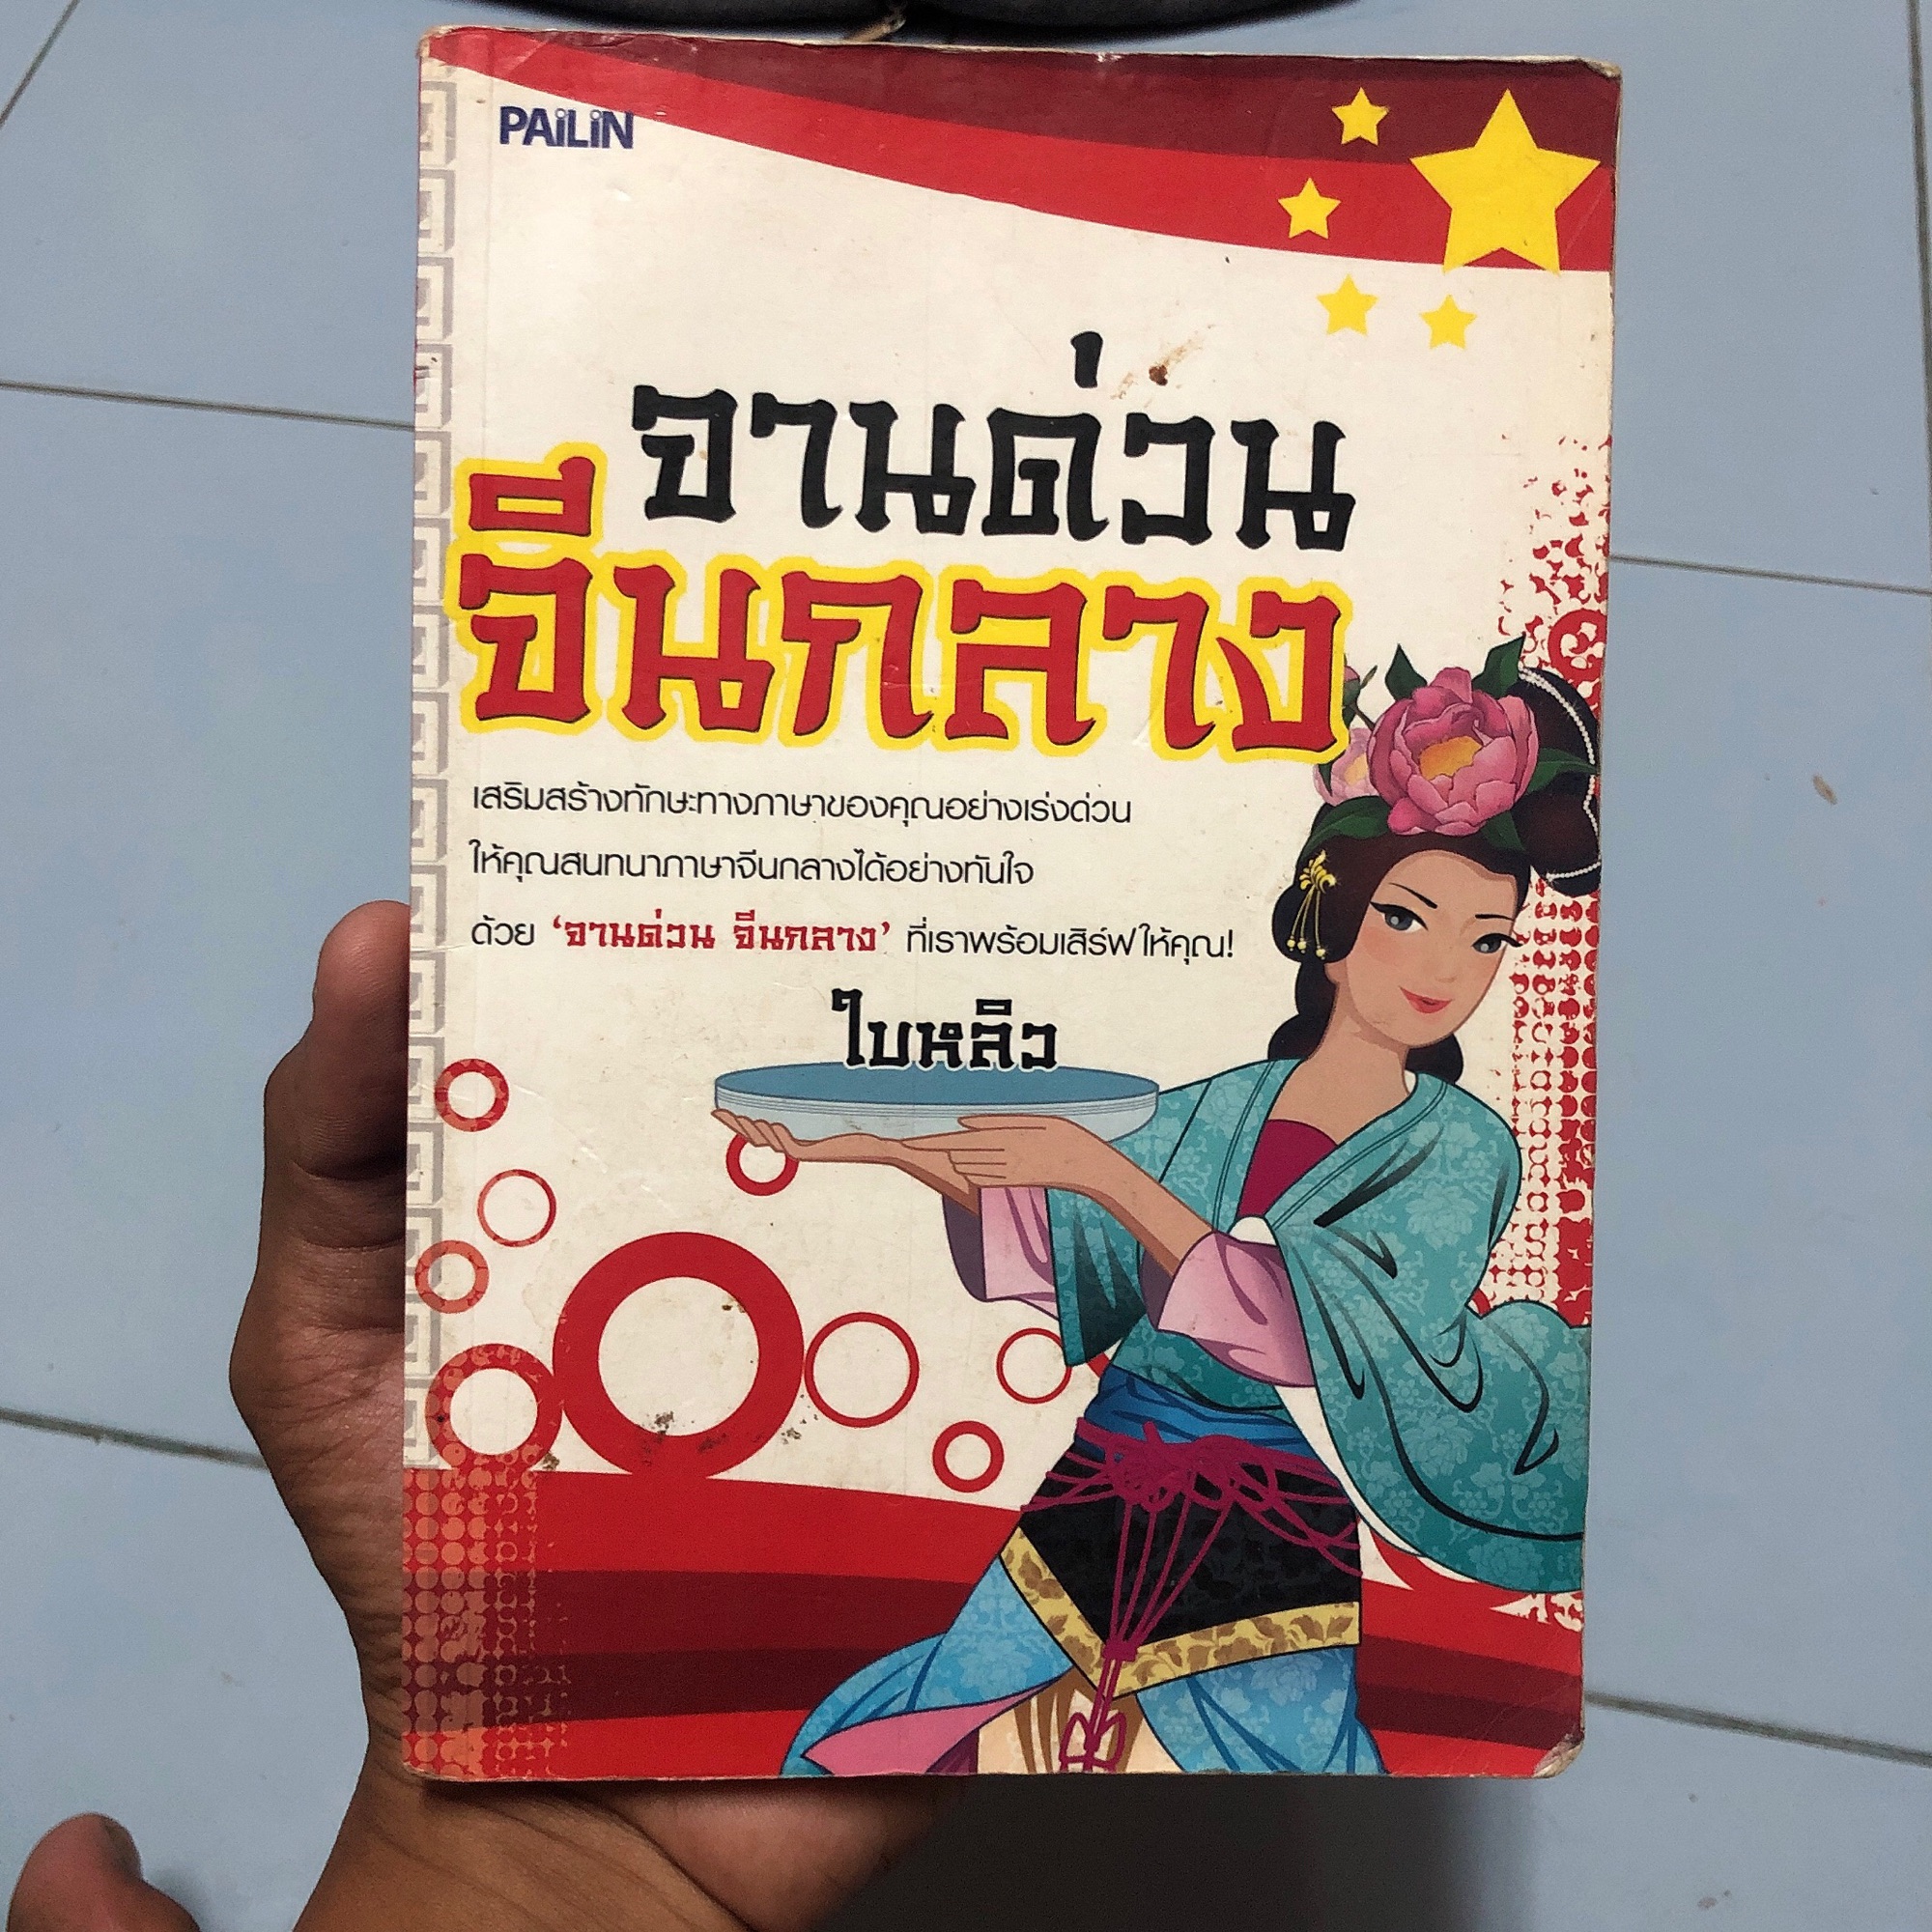 หนังสือ จานด่วนจีนกลาง เสริมสร้างทักษะทางภาษาของคุณอย่างเร่งด่วนให้คุณสนทนาภาษาจีนกลางได้อย่างทันใจ ด้วย ‘จานด่วน จีนกลาง’ ที่เราพร้อมเสิร์ฟให้คุณ!